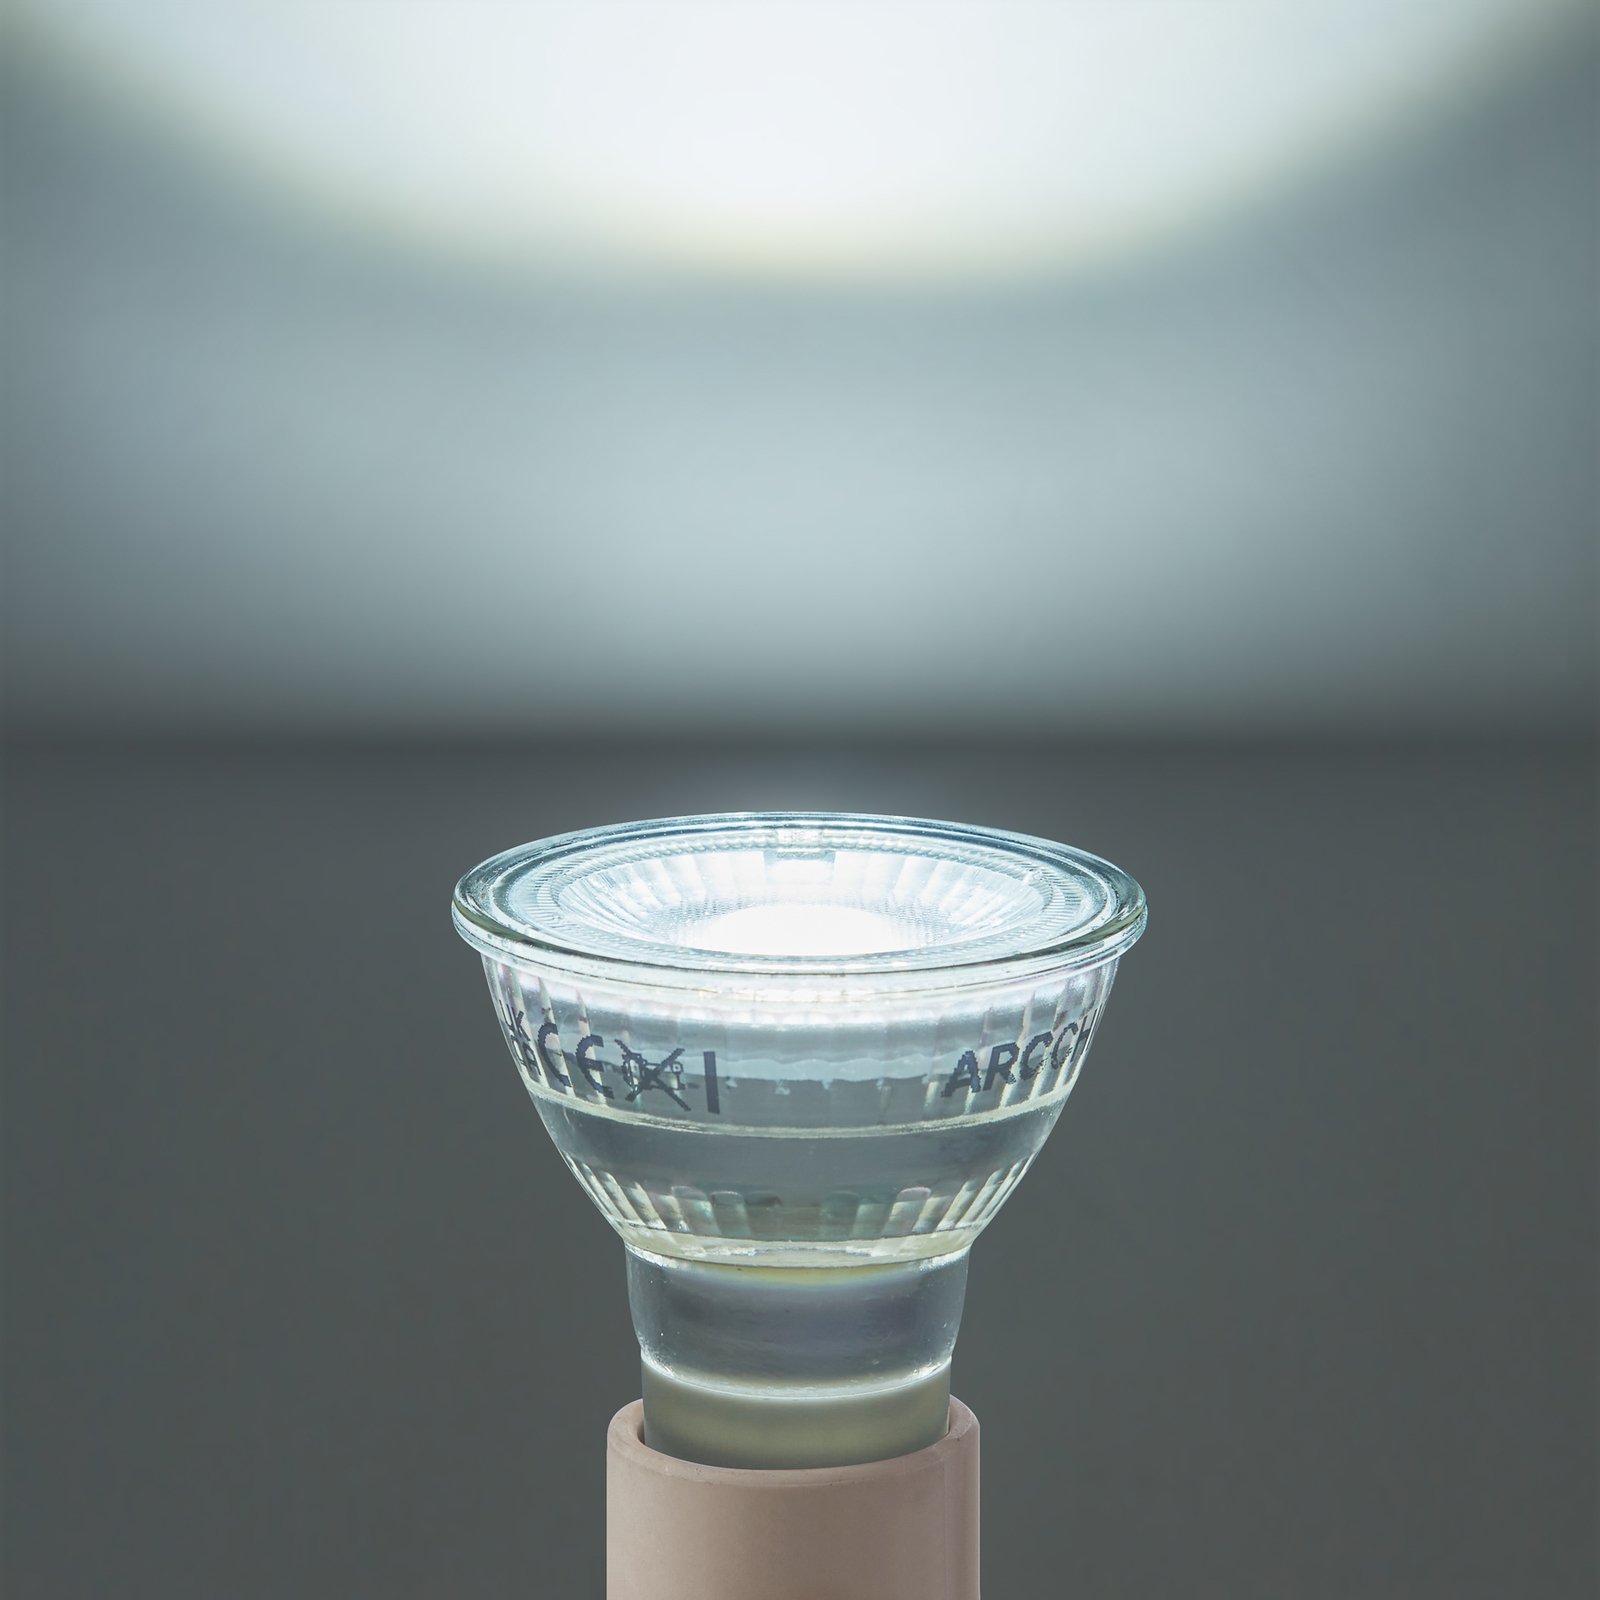 Arcchio ampoule LED GU10 2,5W 6500K 450lm verre set de 10 pièces